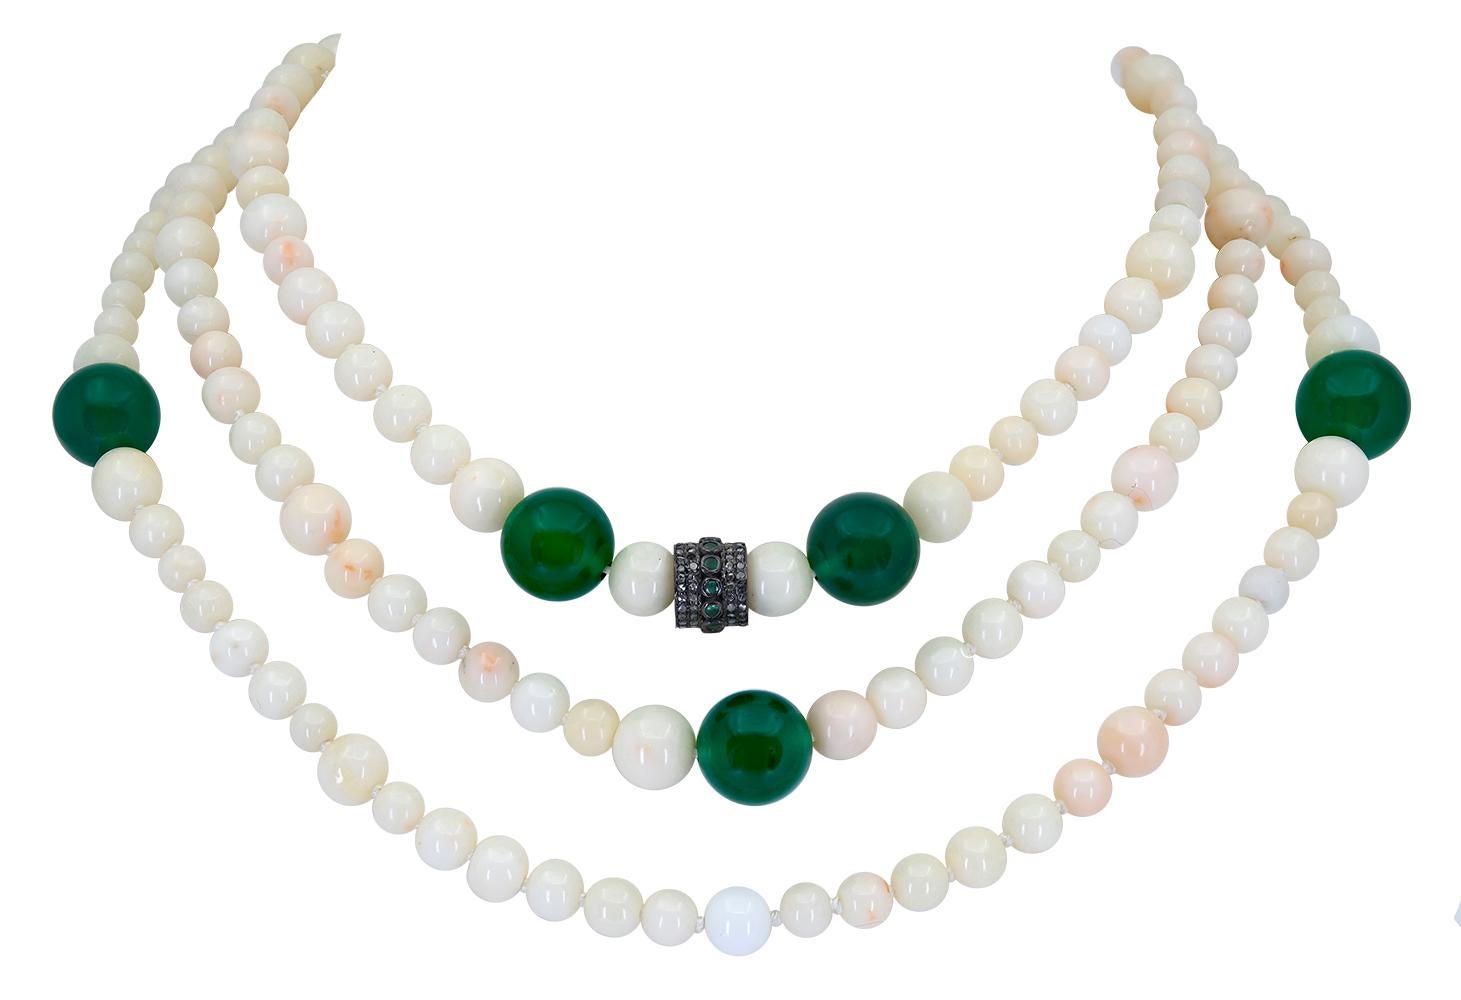 Un collier de 30 pouces de corail blanc et d'onyx vert qui comporte 9 perles rondes translucides d'onyx vert mesurant en moyenne 12,5 mm. Ces perles d'onyx d'un vert intense contrastent avec les perles rondes de corail blanc naturel, dont la taille